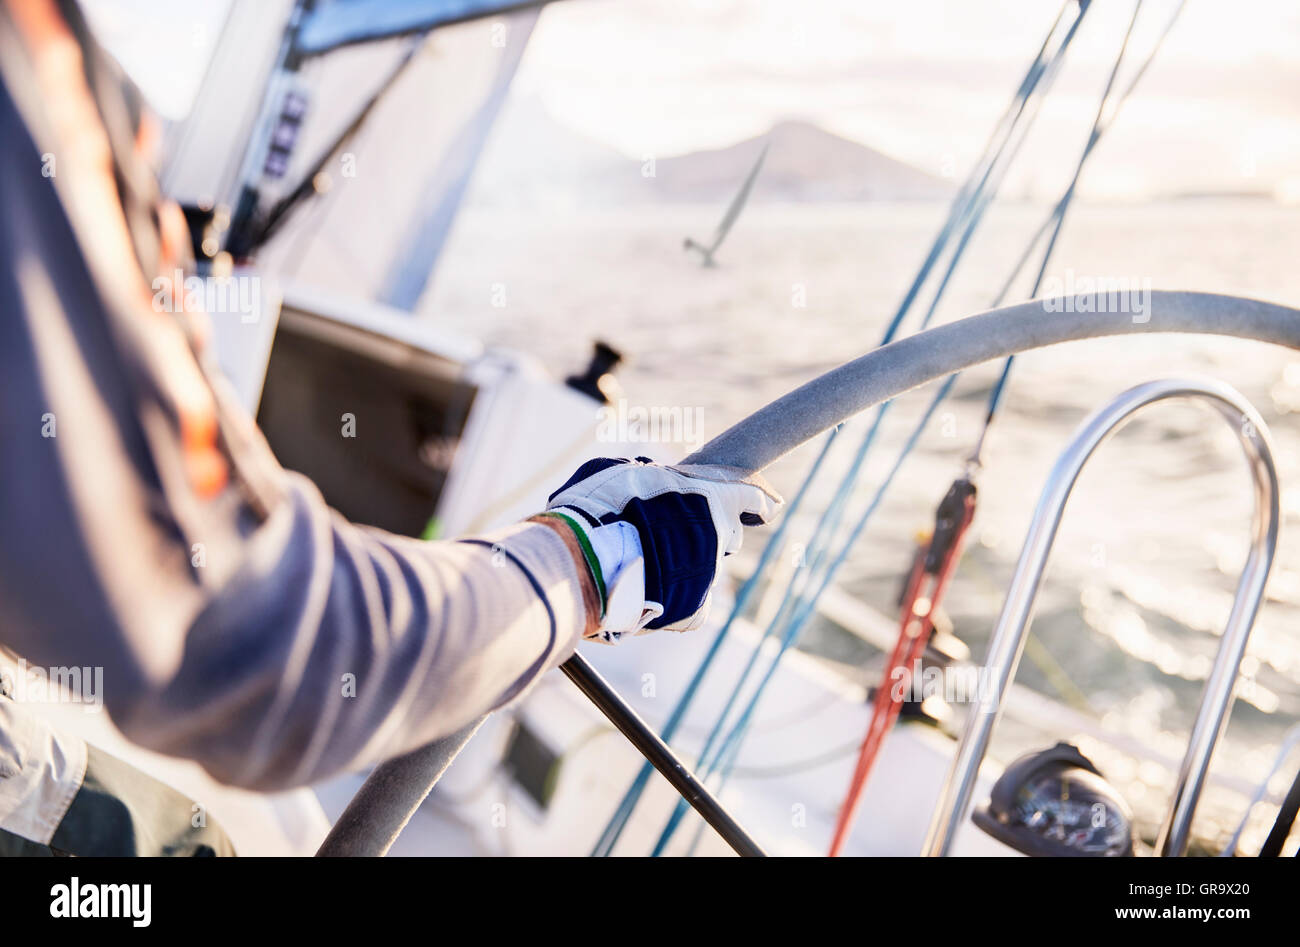 Man sailing steering sailboat at helm Stock Photo